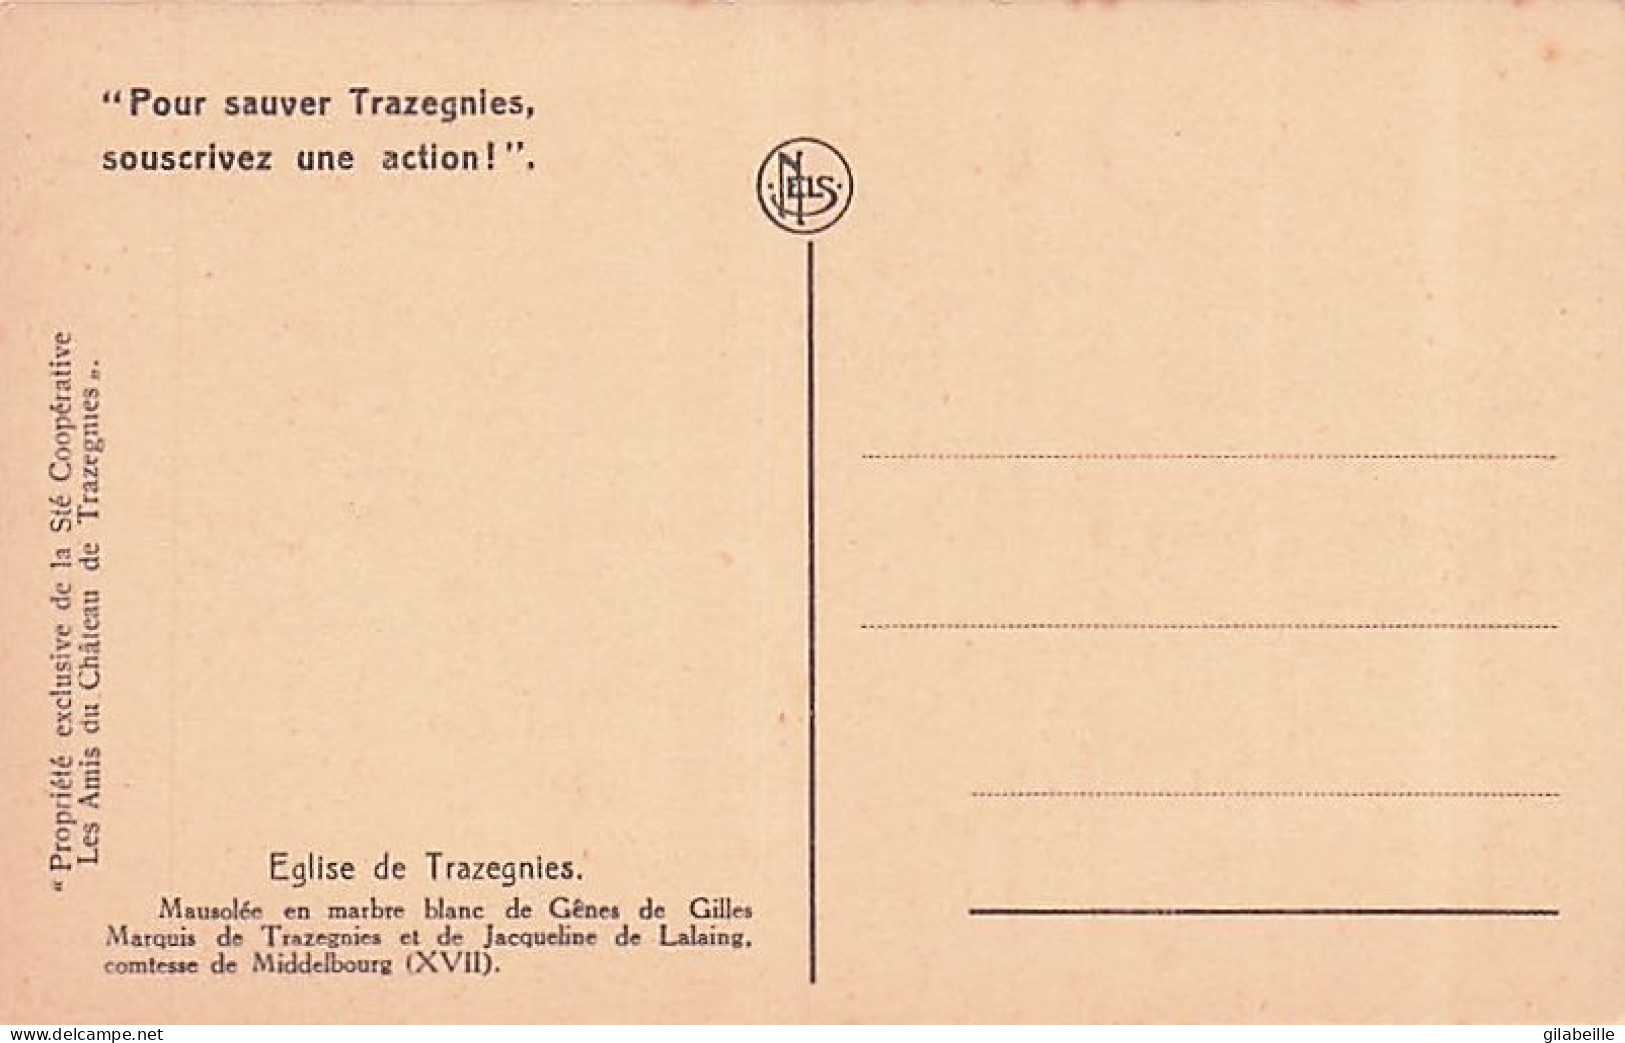 Courcelles - TRAZEGNIES - Mausolée De Genes De Gilles Et De Jean Baron De Trazegnies - Lot 3 Cartes - Parfait Etat - Courcelles